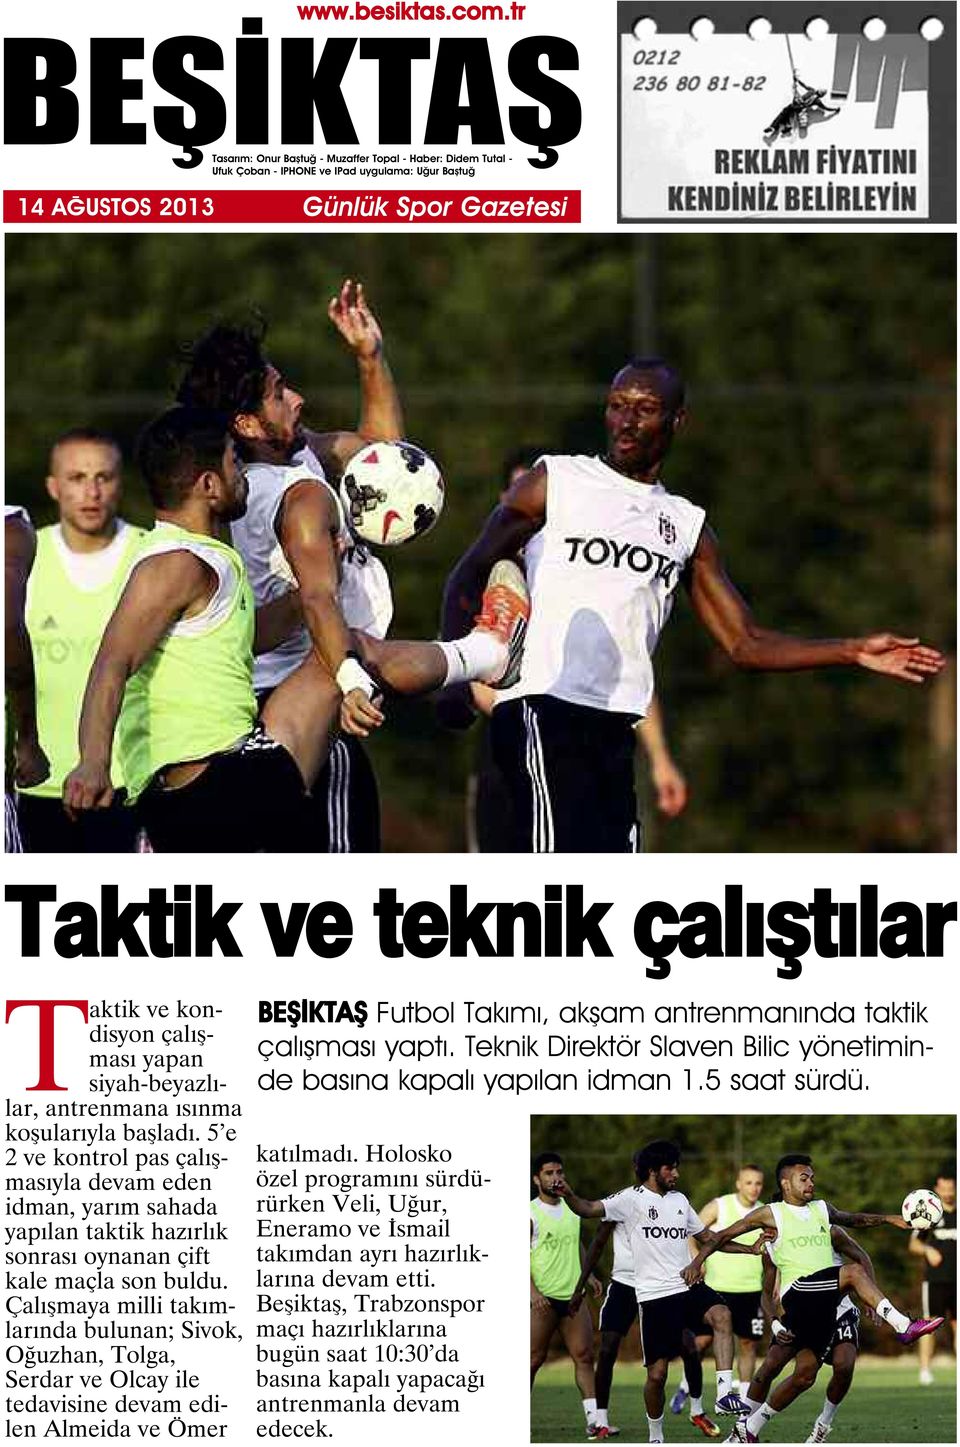 Çalışmaya milli takımlarında bulunan; Sivok, Oğuzhan, Tolga, Serdar ve Olcay ile tedavisine devam edilen Almeida ve Ömer Futbol Takımı, akşam antrenmanında taktik çalışması yaptı.